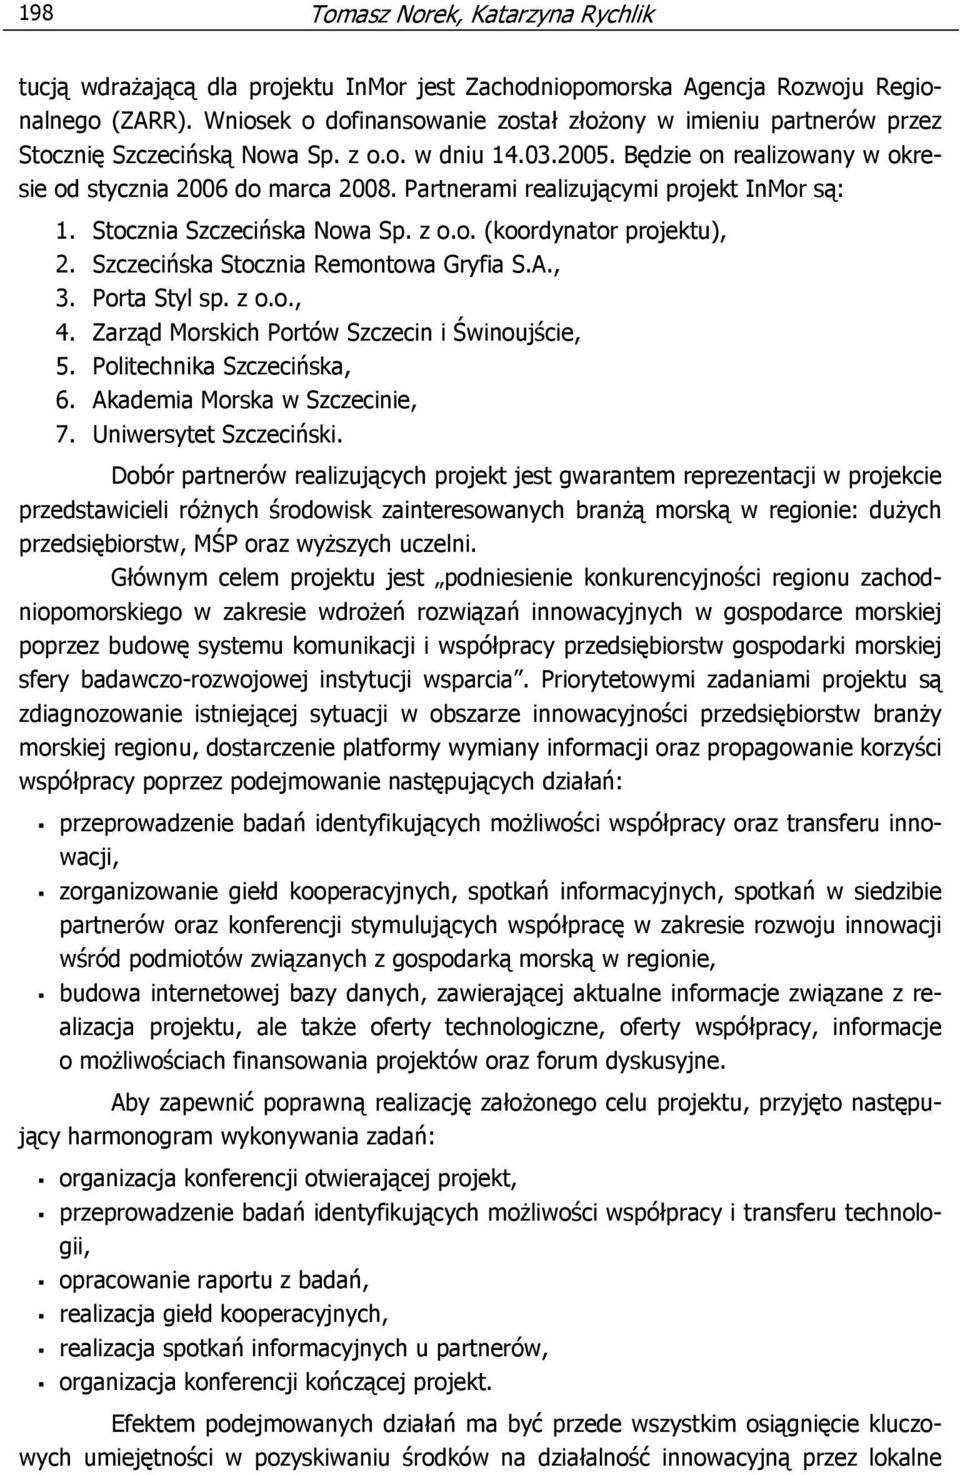 Partnerami realizującymi projekt InMor są: 1. Stocznia Szczecińska Nowa Sp. z o.o. (koordynator projektu), 2. Szczecińska Stocznia Remontowa Gryfia S.A., 3. Porta Styl sp. z o.o., 4.